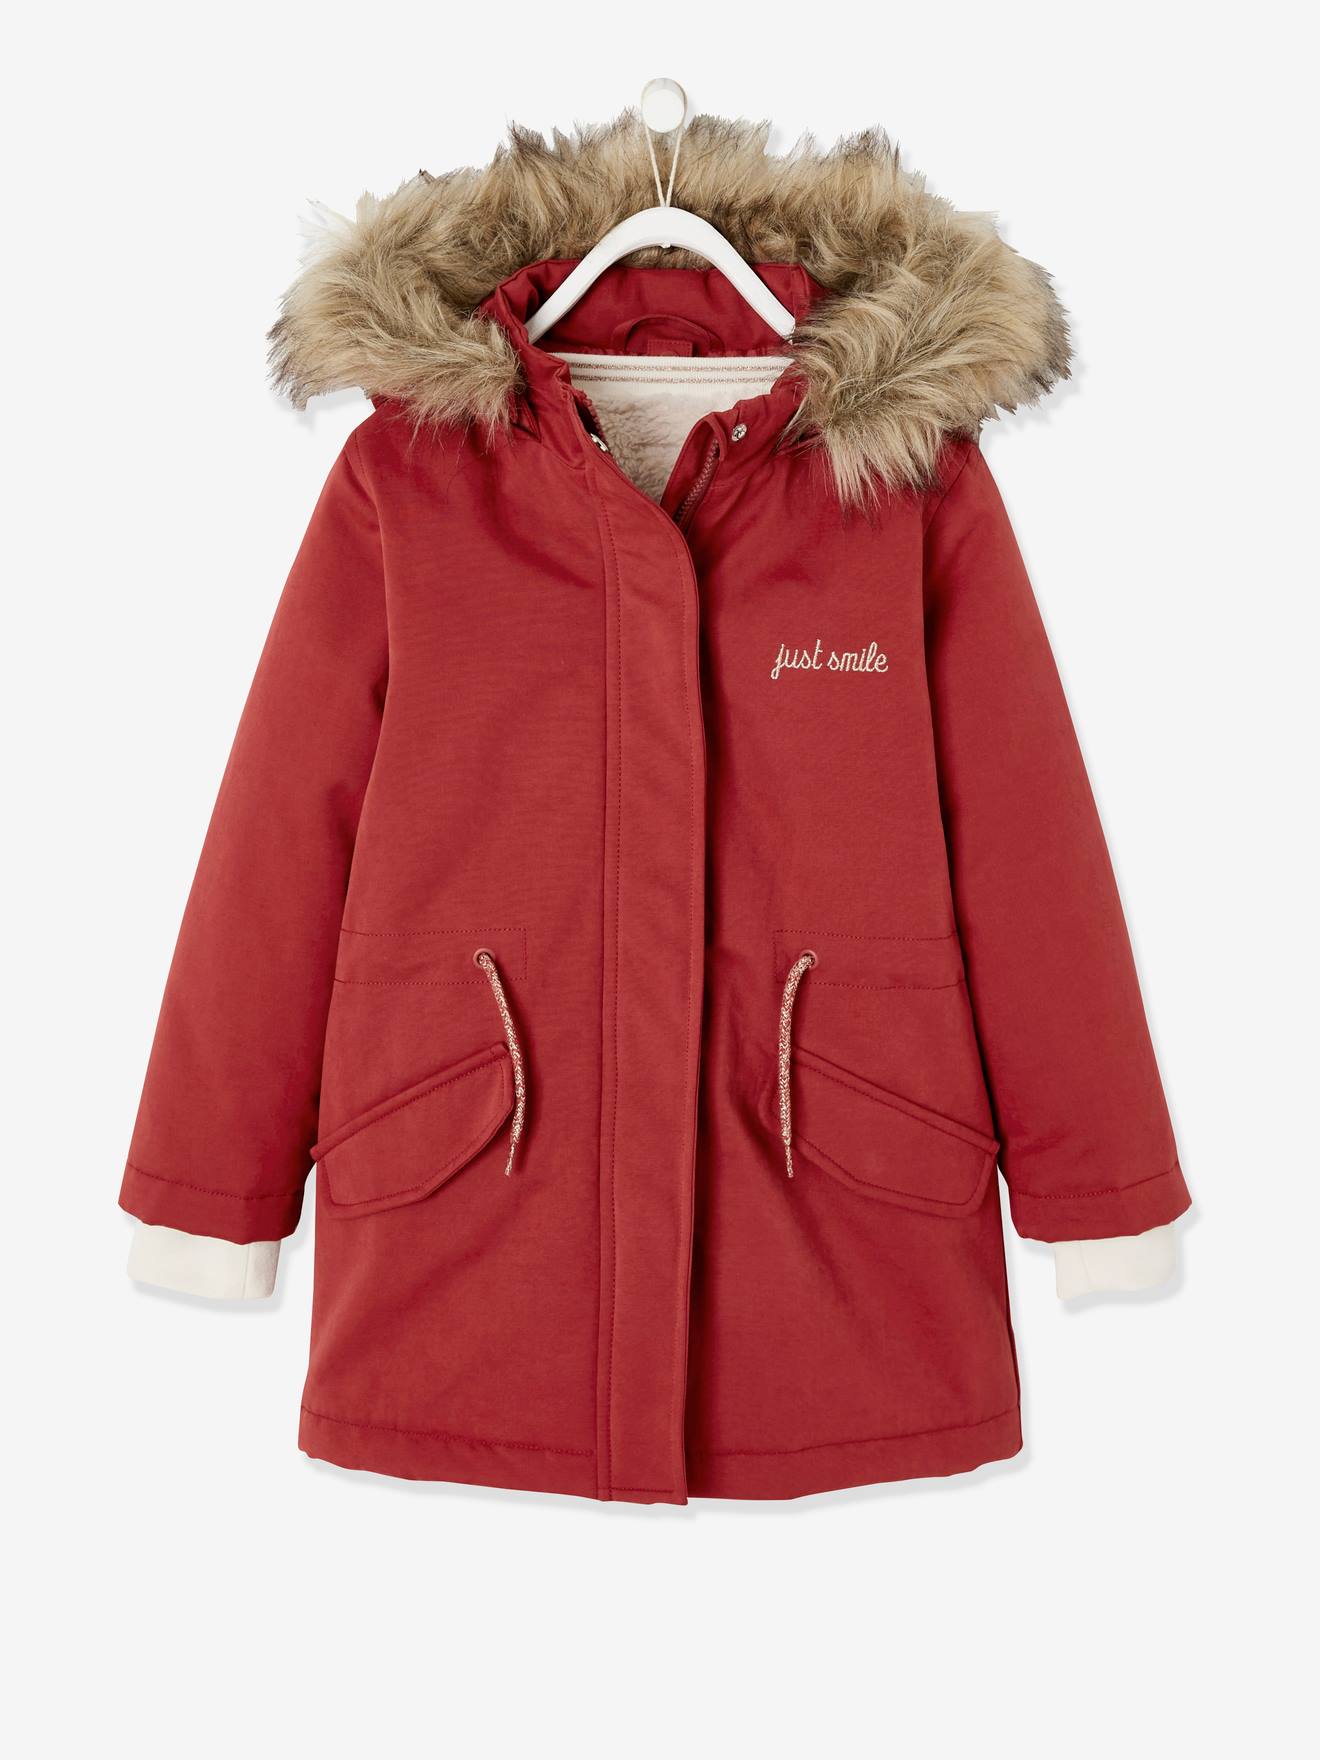 shelikes Girls Padded Coat Showerproof Parka Faux Fur Hooded Winter Jacket